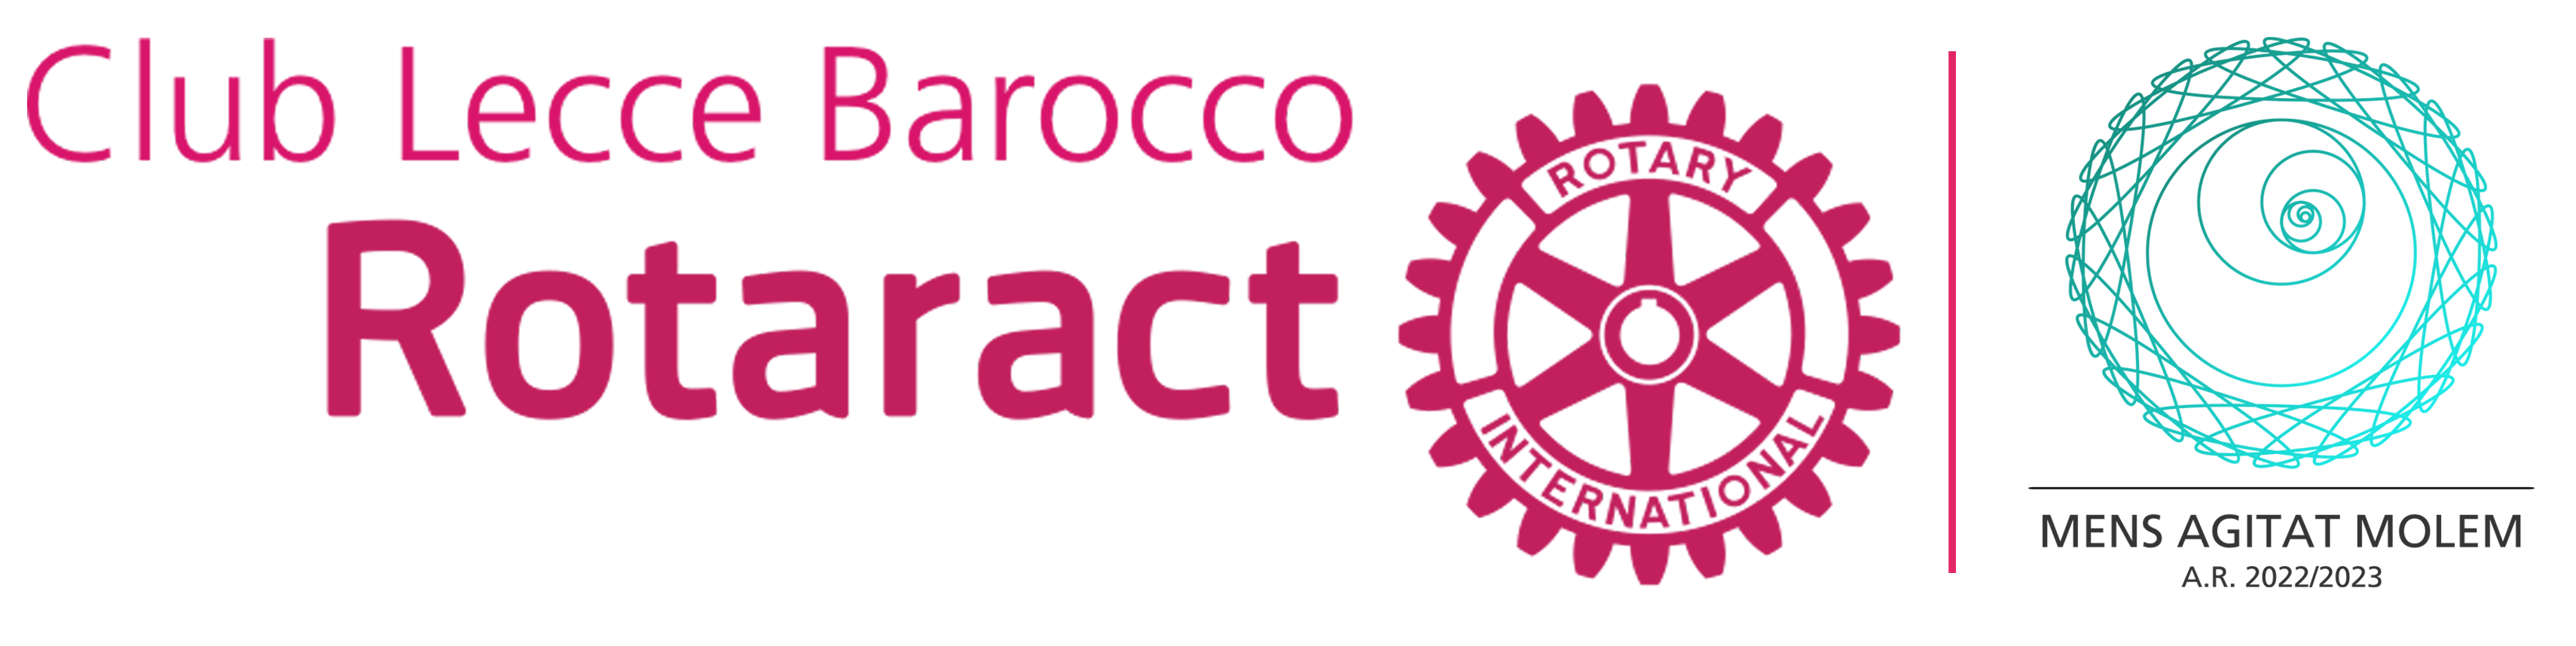 Rotaract Club Lecce Barocco - Il Rotaract di Lecce